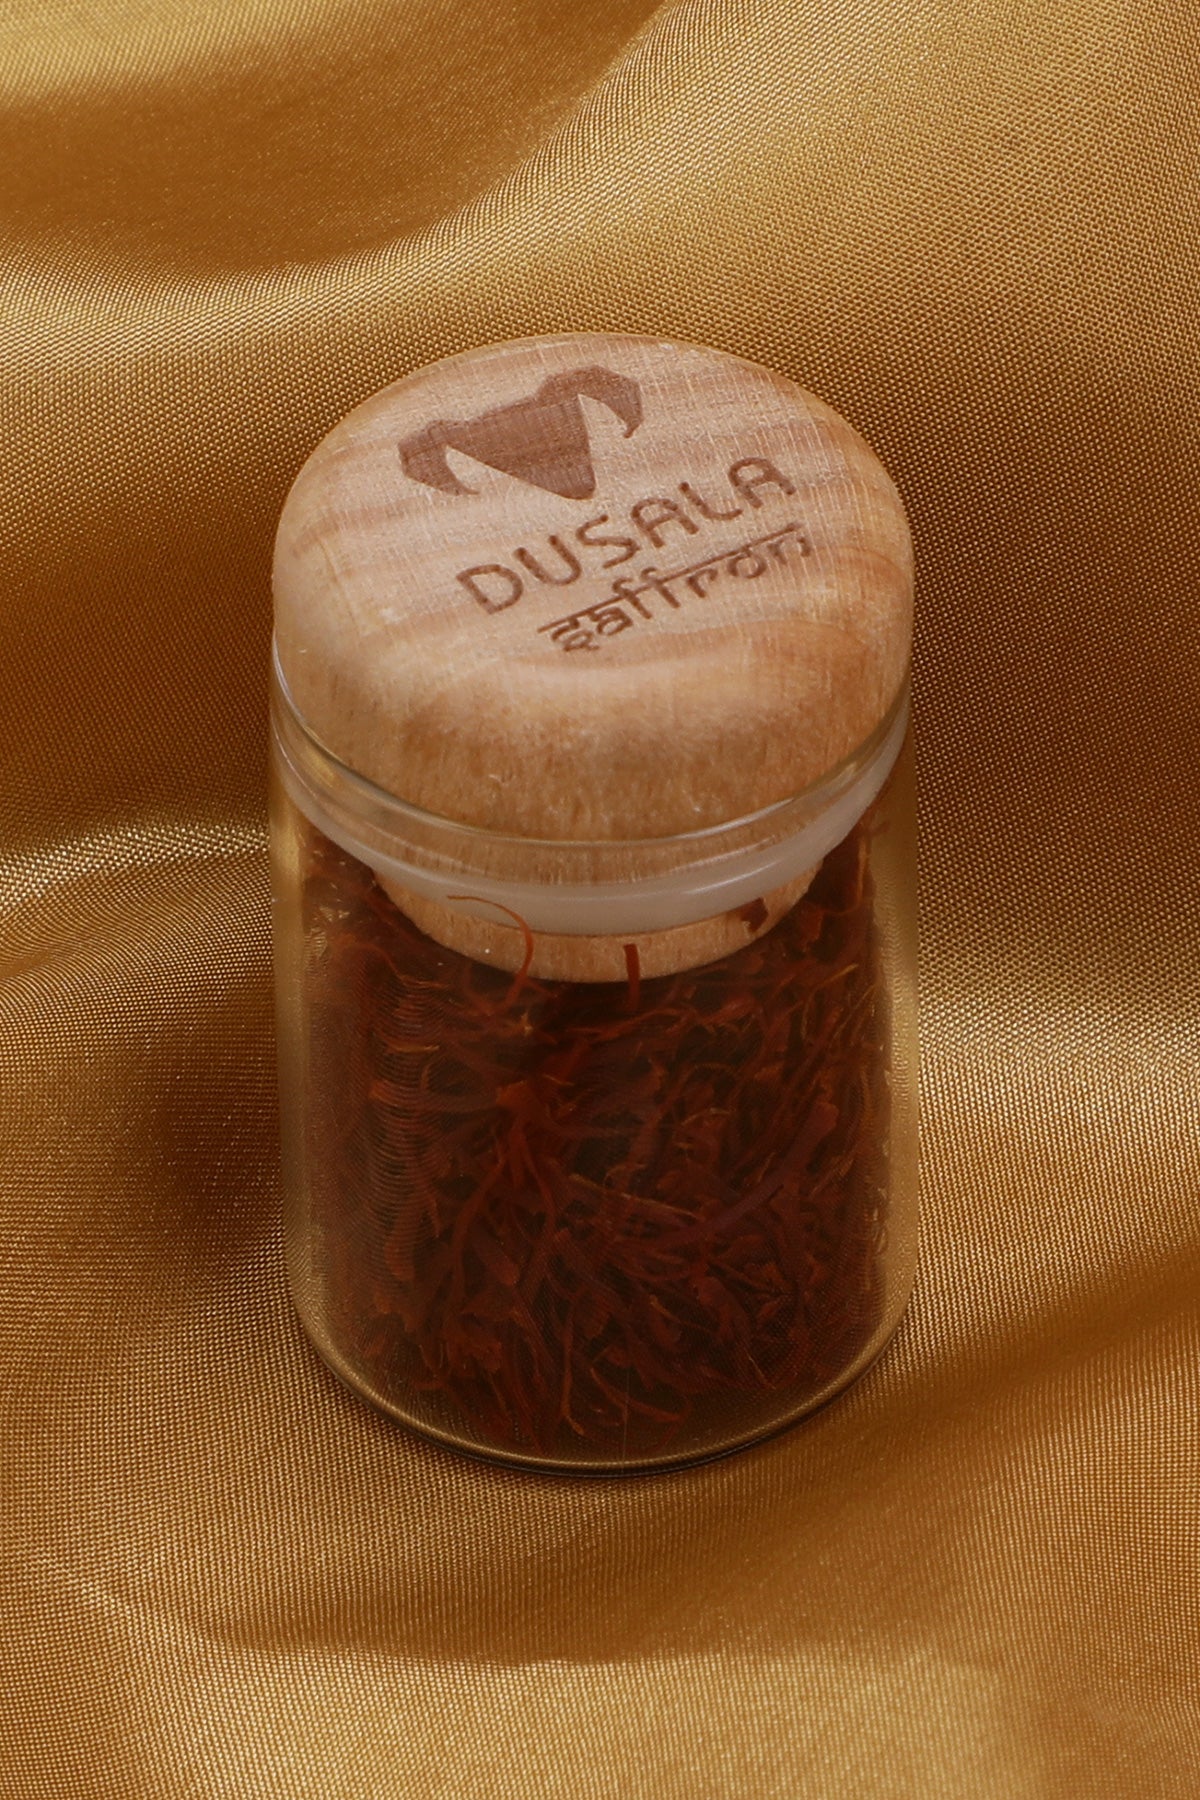 Saffron-Dusala